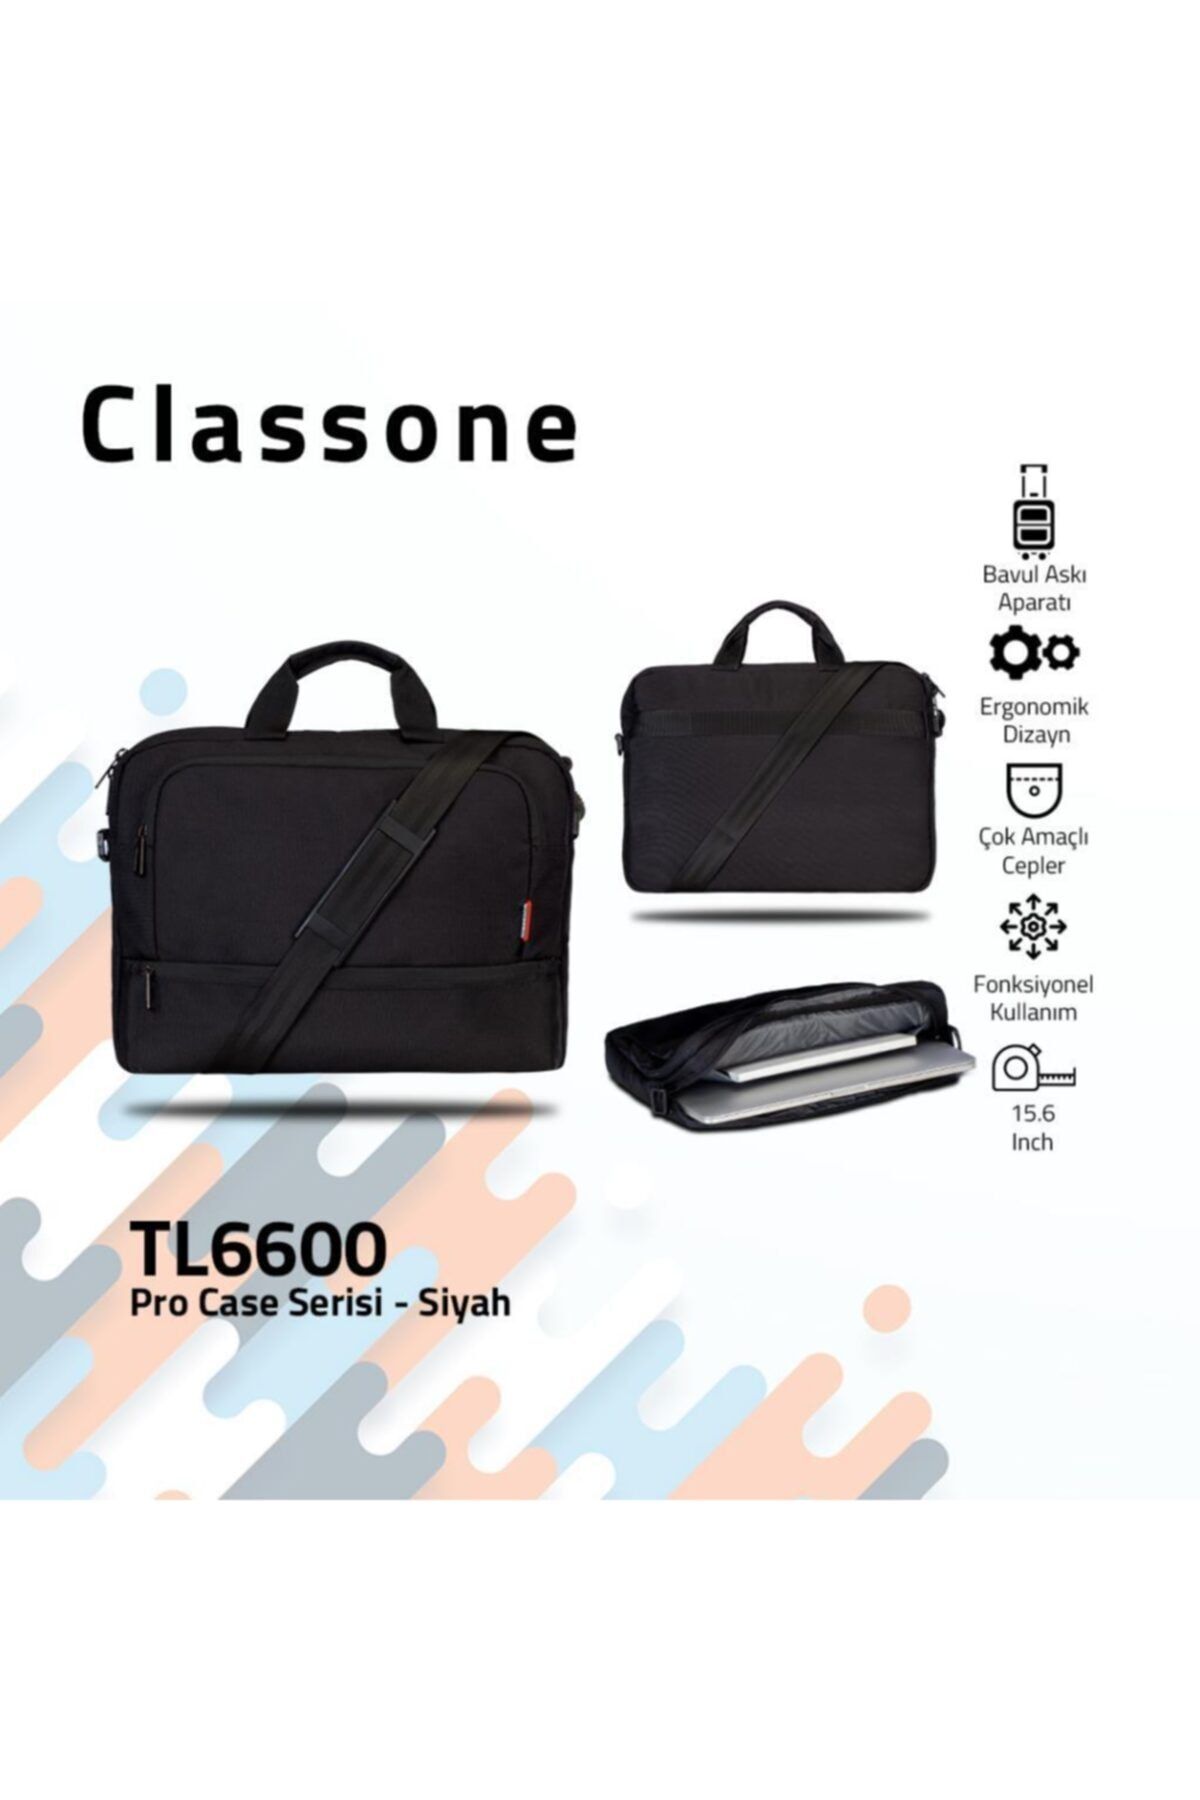 Classone Tl6600 El 15.6 Inç Uyumlu Notebook El Çantası